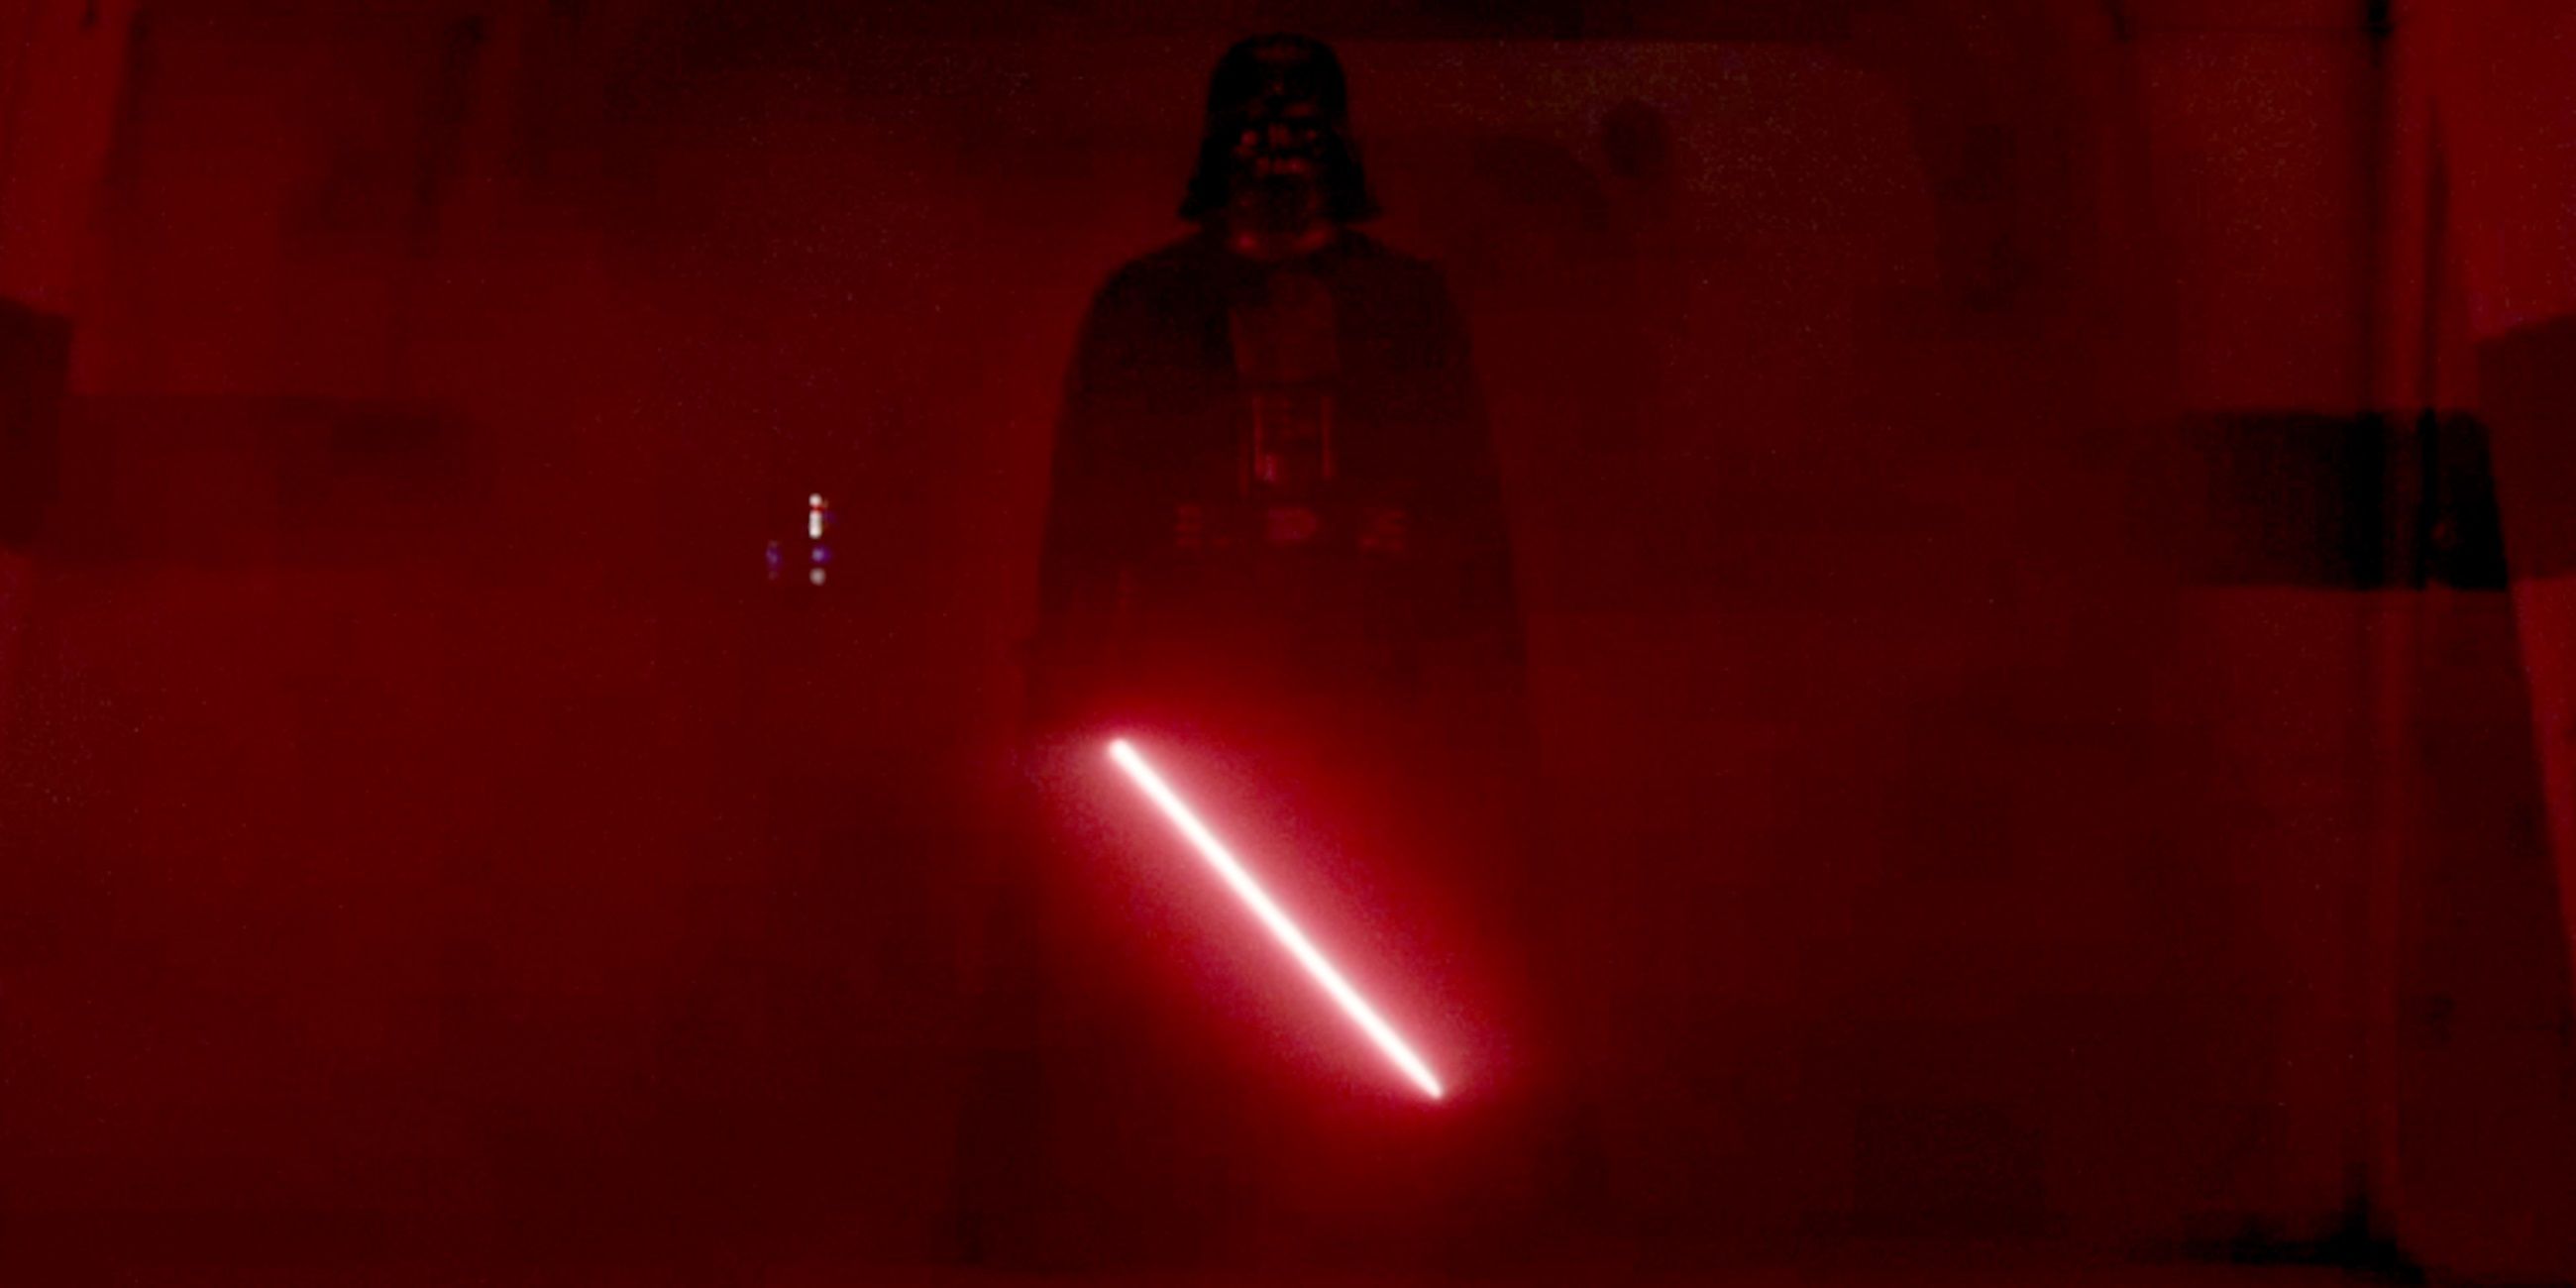 Darth Vader ambushes rebels at the end of Rogue One